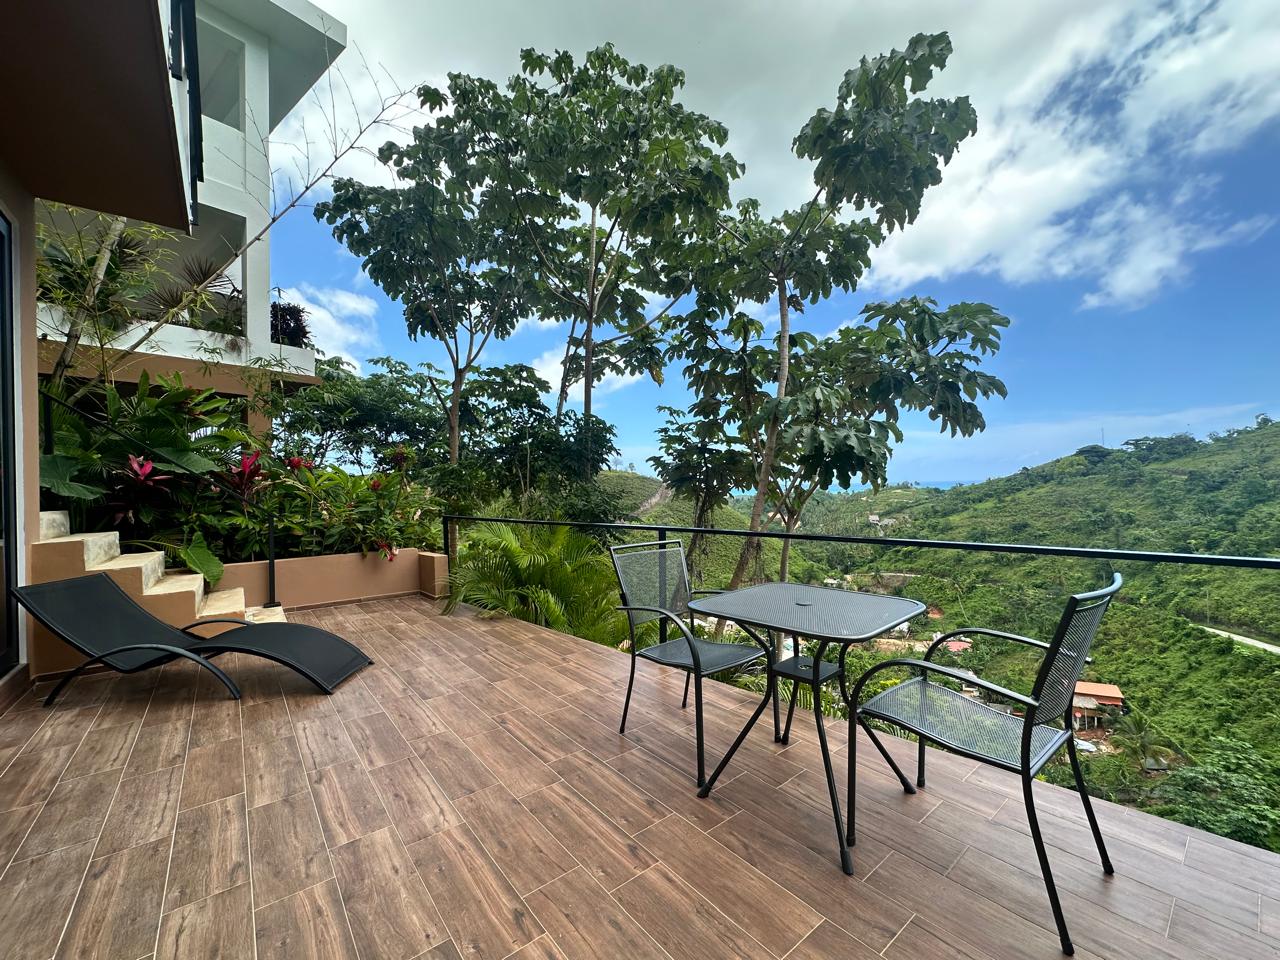 Splendid 4-bedroom villa with ocean vista - Las Terrenas Real Estate - Ocean Edge Dominican Republic (50)